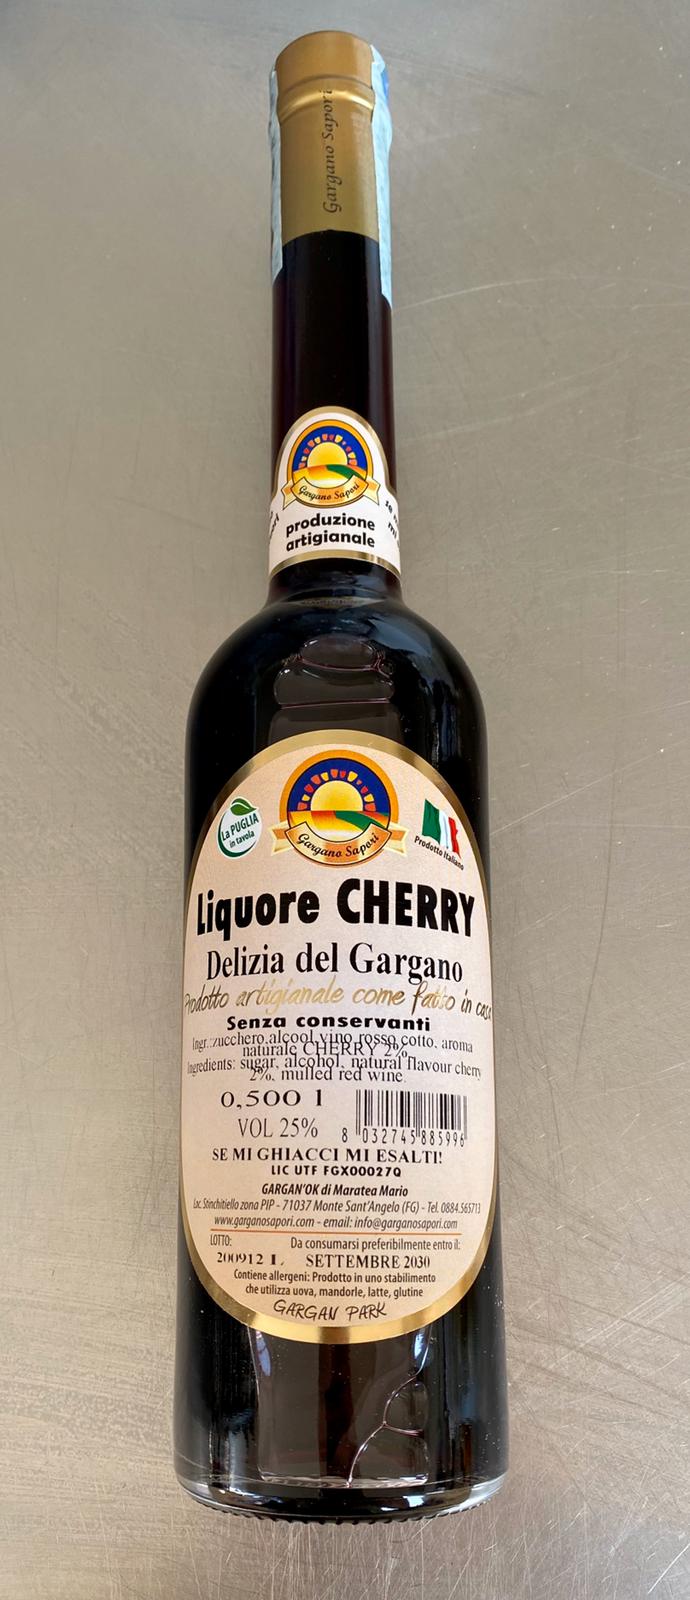 LIQUORE CHERRY DEL GARGANO 500 ML - 2 Bottiglie - I migliori prodotti Made in Italy da Fiera di Monza Shop - Solo 27.90€! Acquista subito su Fiera di Monza Shop!